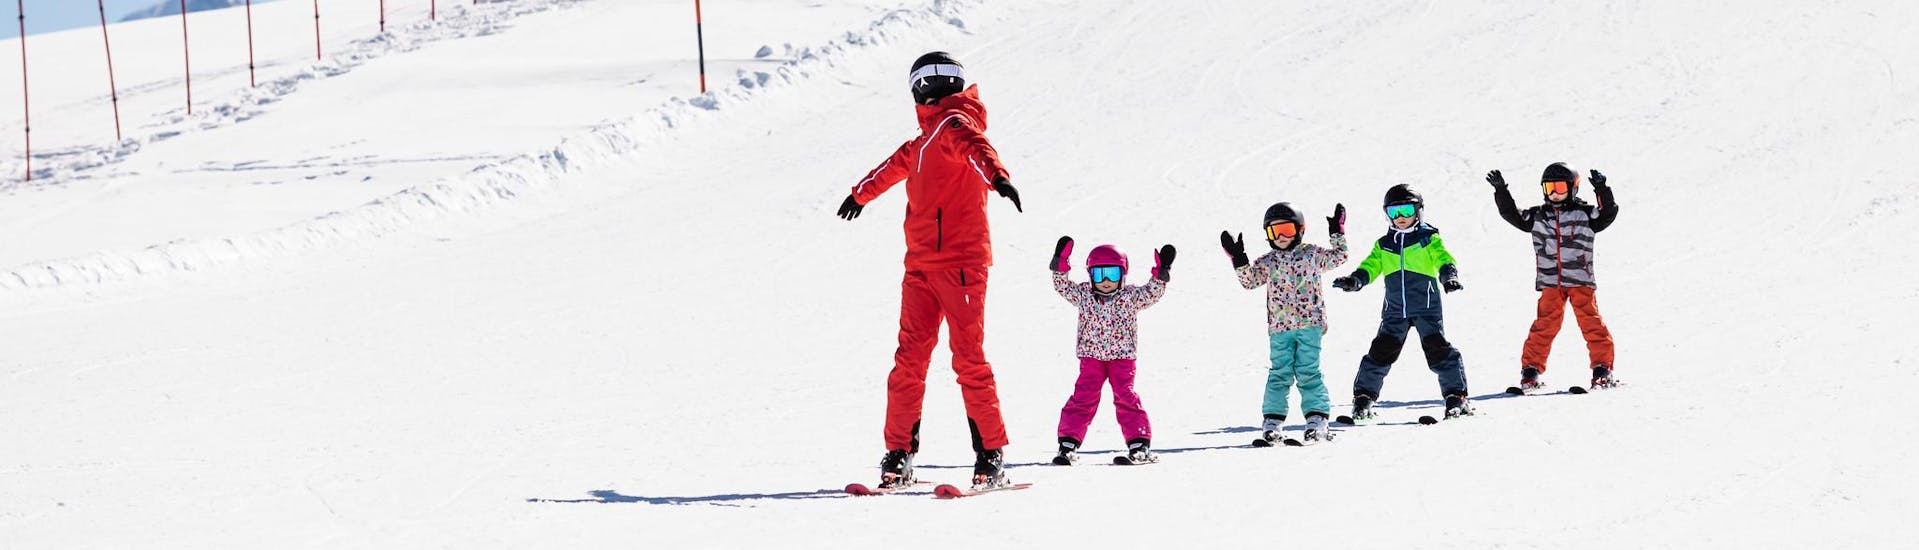 Moniteur de ski et enfants profitent d'une leçon de ski dans une école de ski près de Zaragoza.